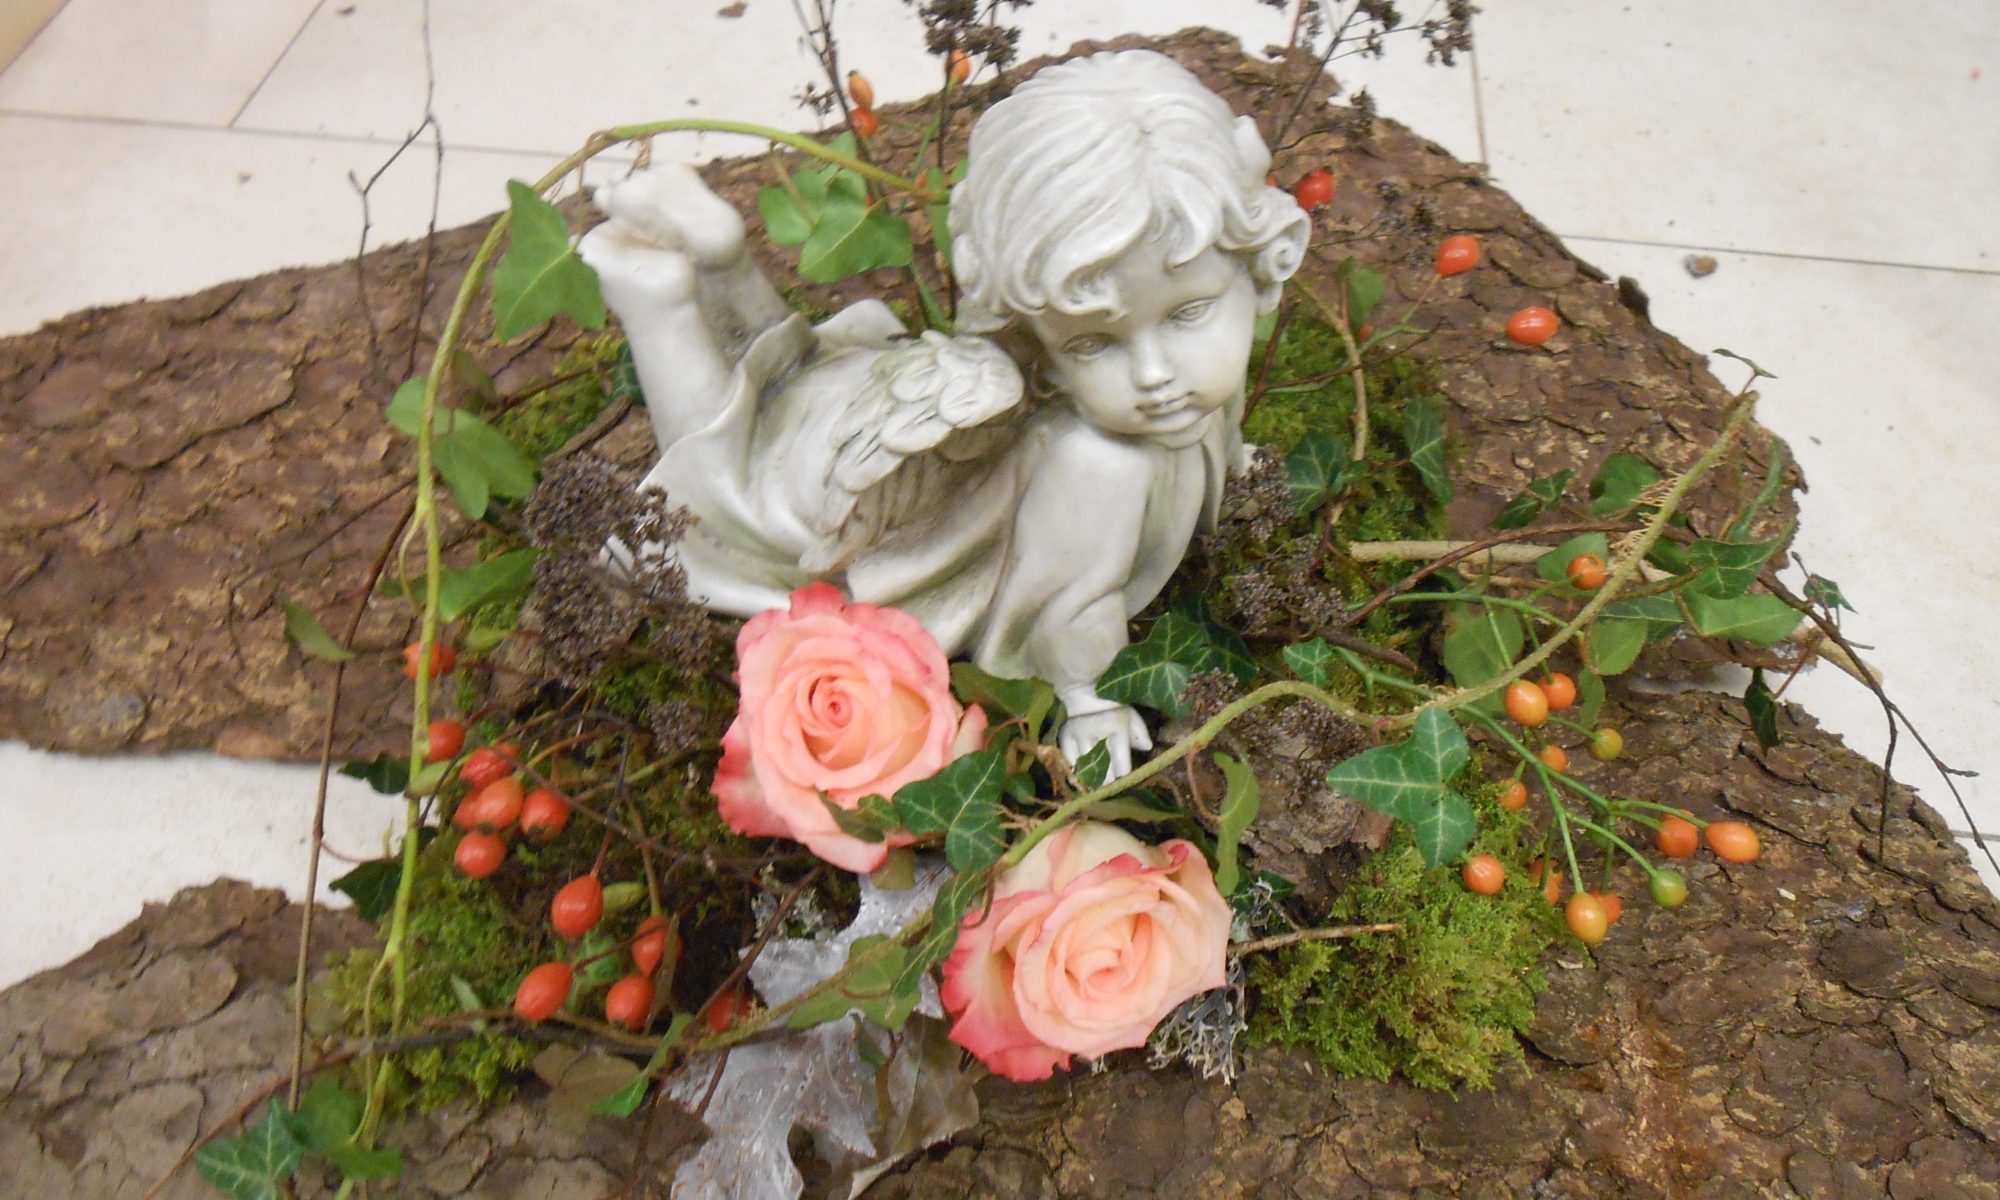 Ein Gesteck auf einer Baumrind bestehend aus zwei rosa Rosen, Hagebutten, Moos, getrockneten Ästen und Efeuranken. In der Mitte vom Gesteck befindet sich ein am Bauch liegender Engel .